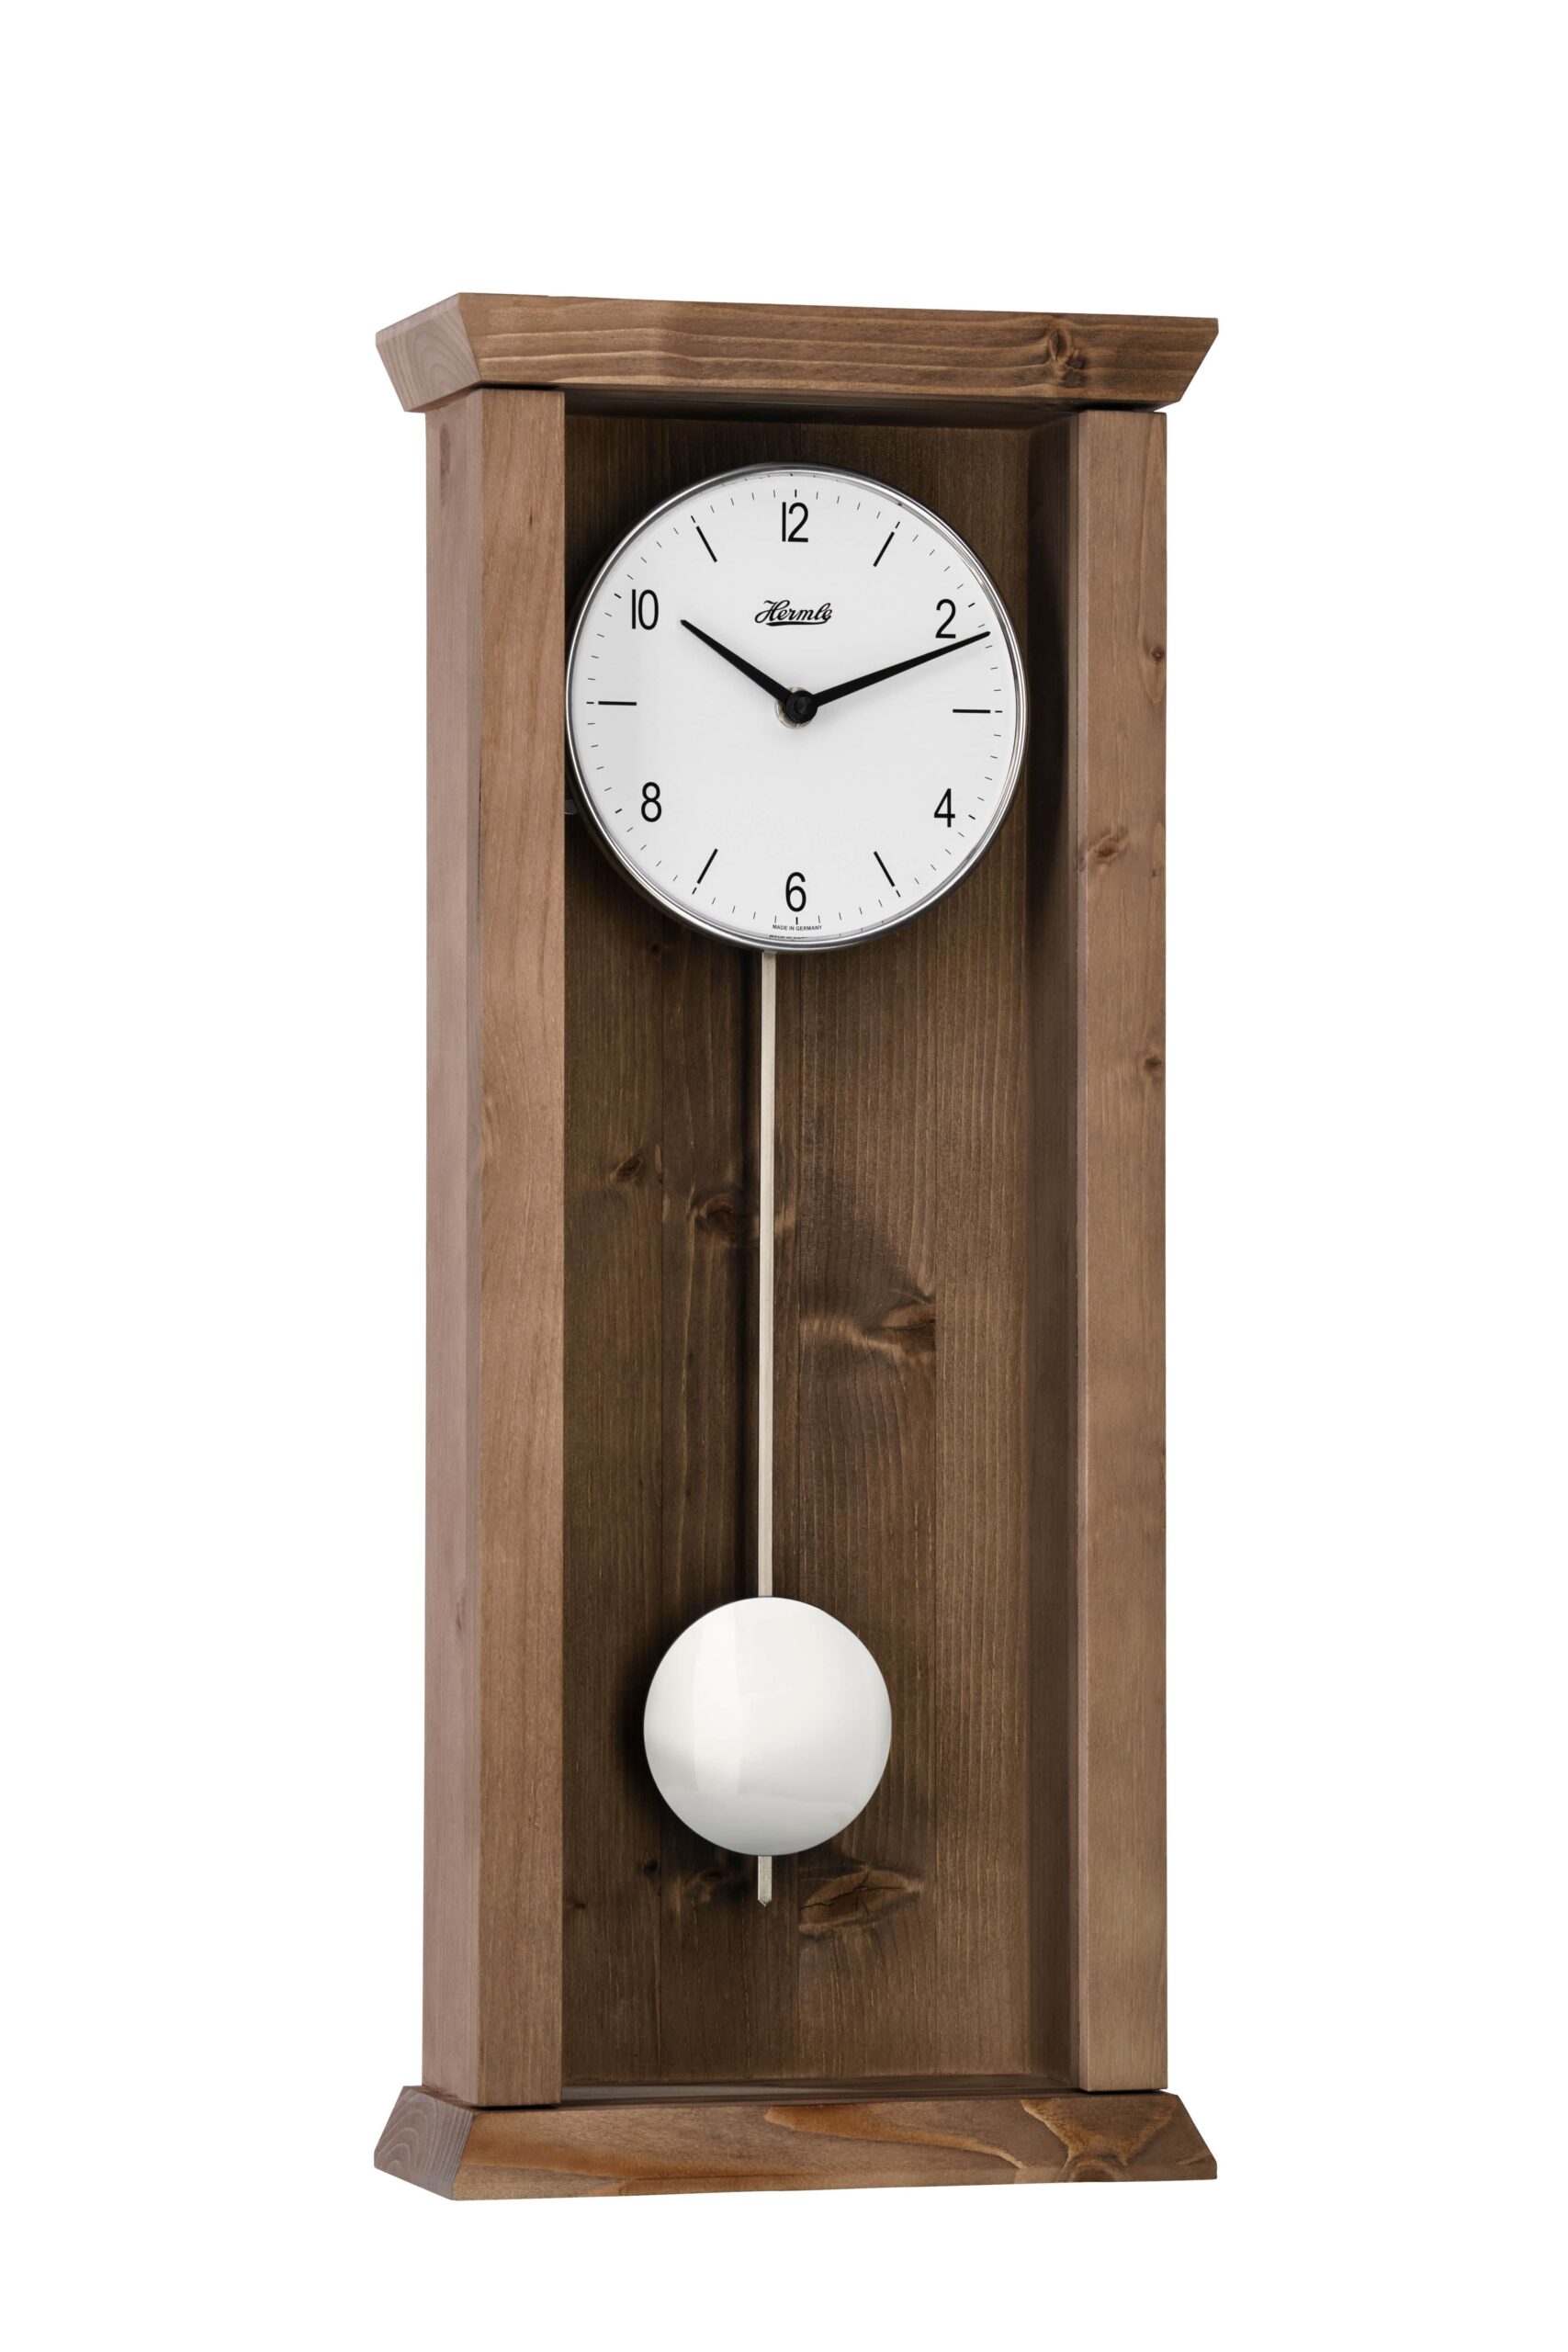 hermle-wall-clock-arden-quartz-only-pendulum-oak-71002042200